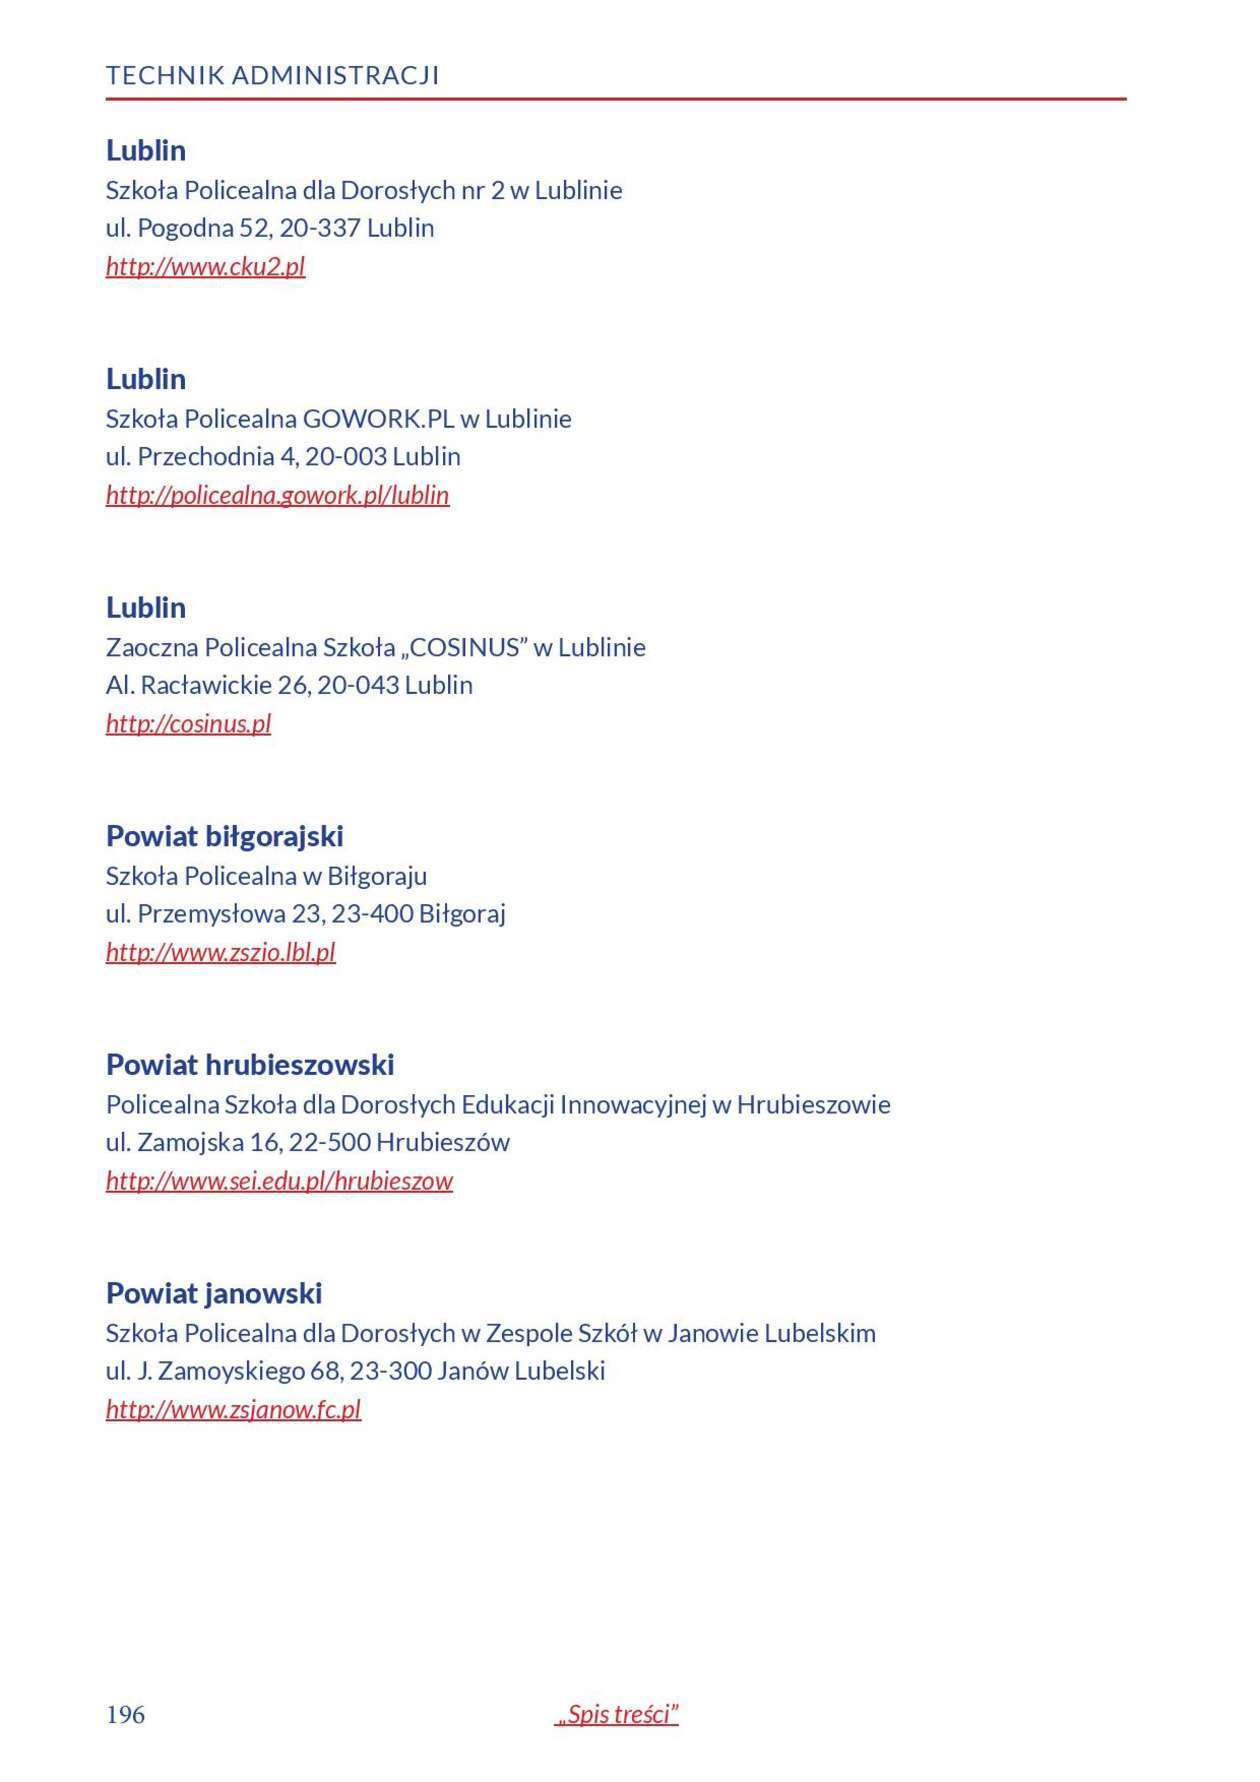  Informator o zawodach 2018/2019 w woj. lubelskim. Część 1 (zdjęcie 194) - Autor: Kuratorium Oświaty w Lublinie